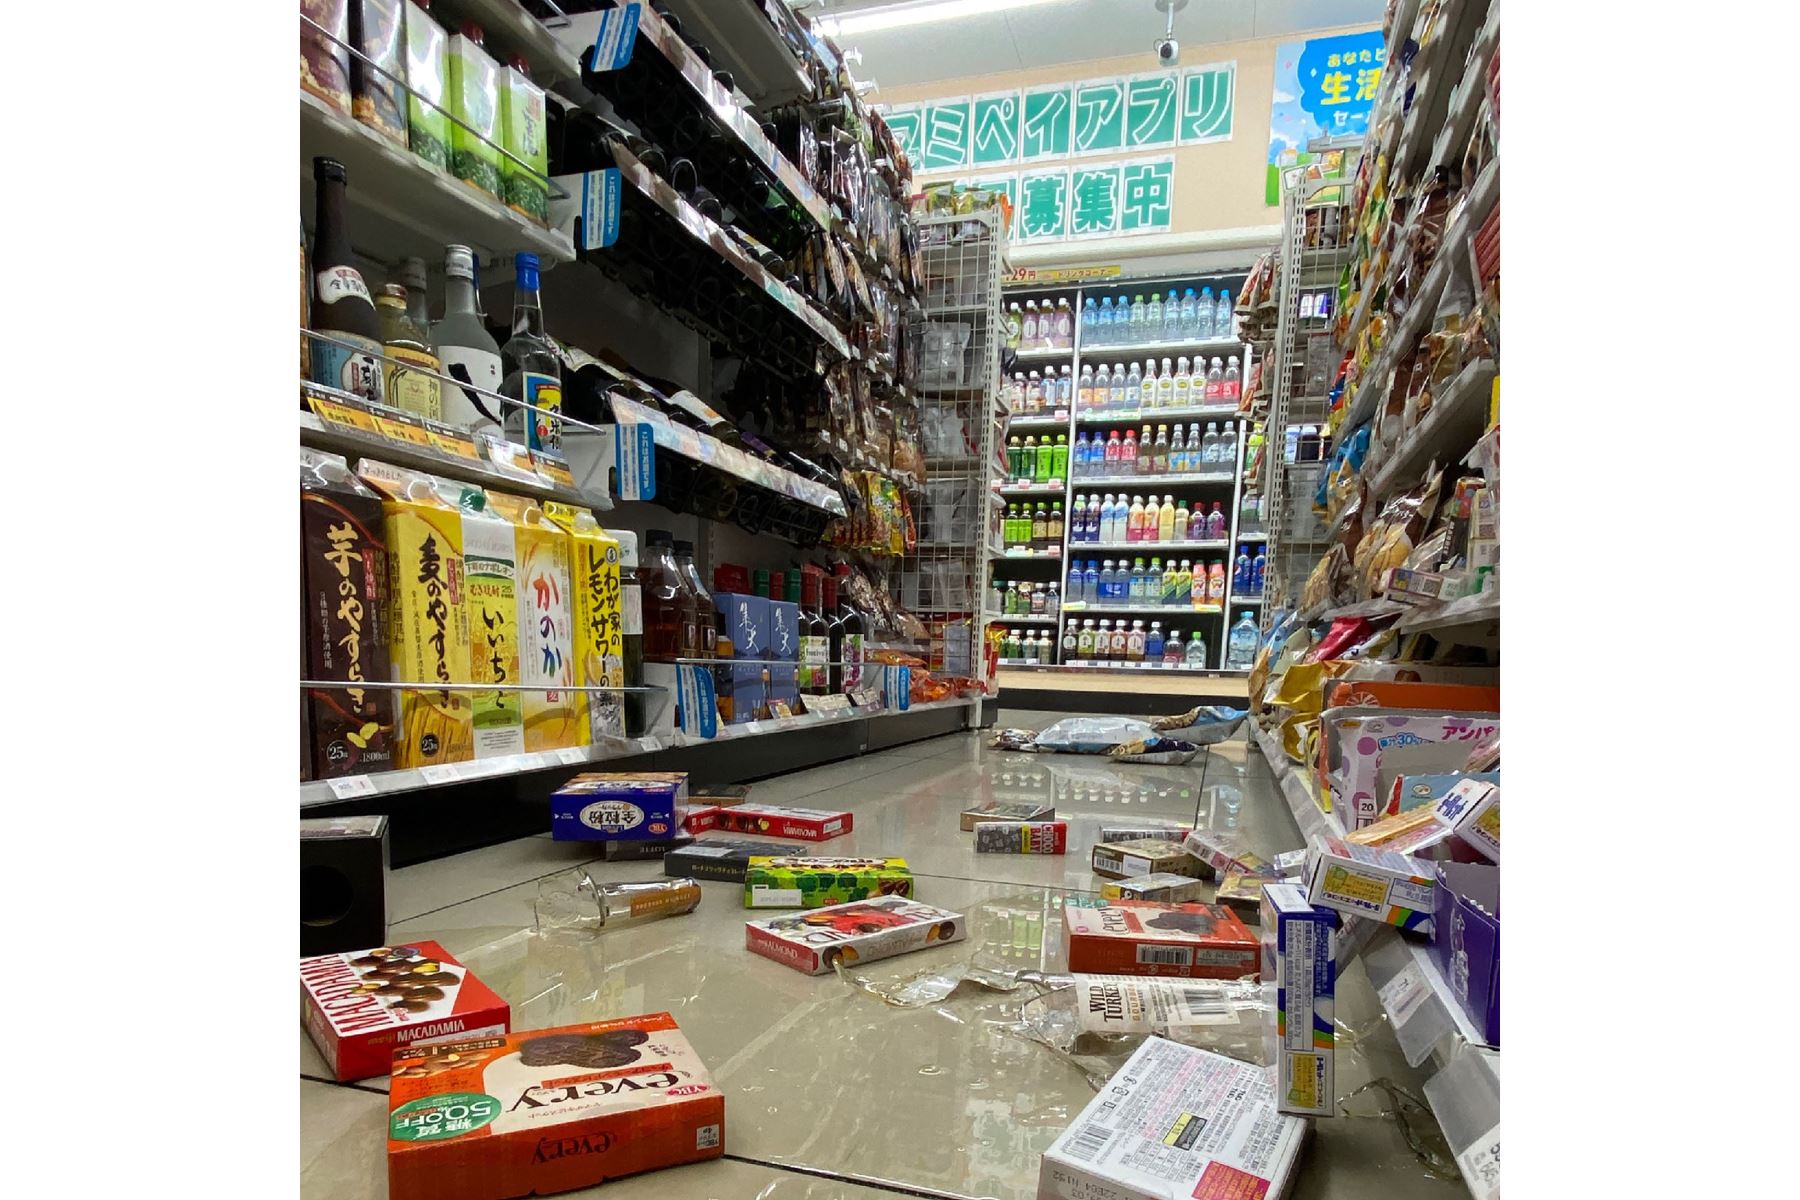 Artículos en el suelo en una tienda de conveniencia en Sendai, prefectura de Miyagi, después de que un terremoto de magnitud 7.3 sacudiera el este de Japón.
Foto: AFP